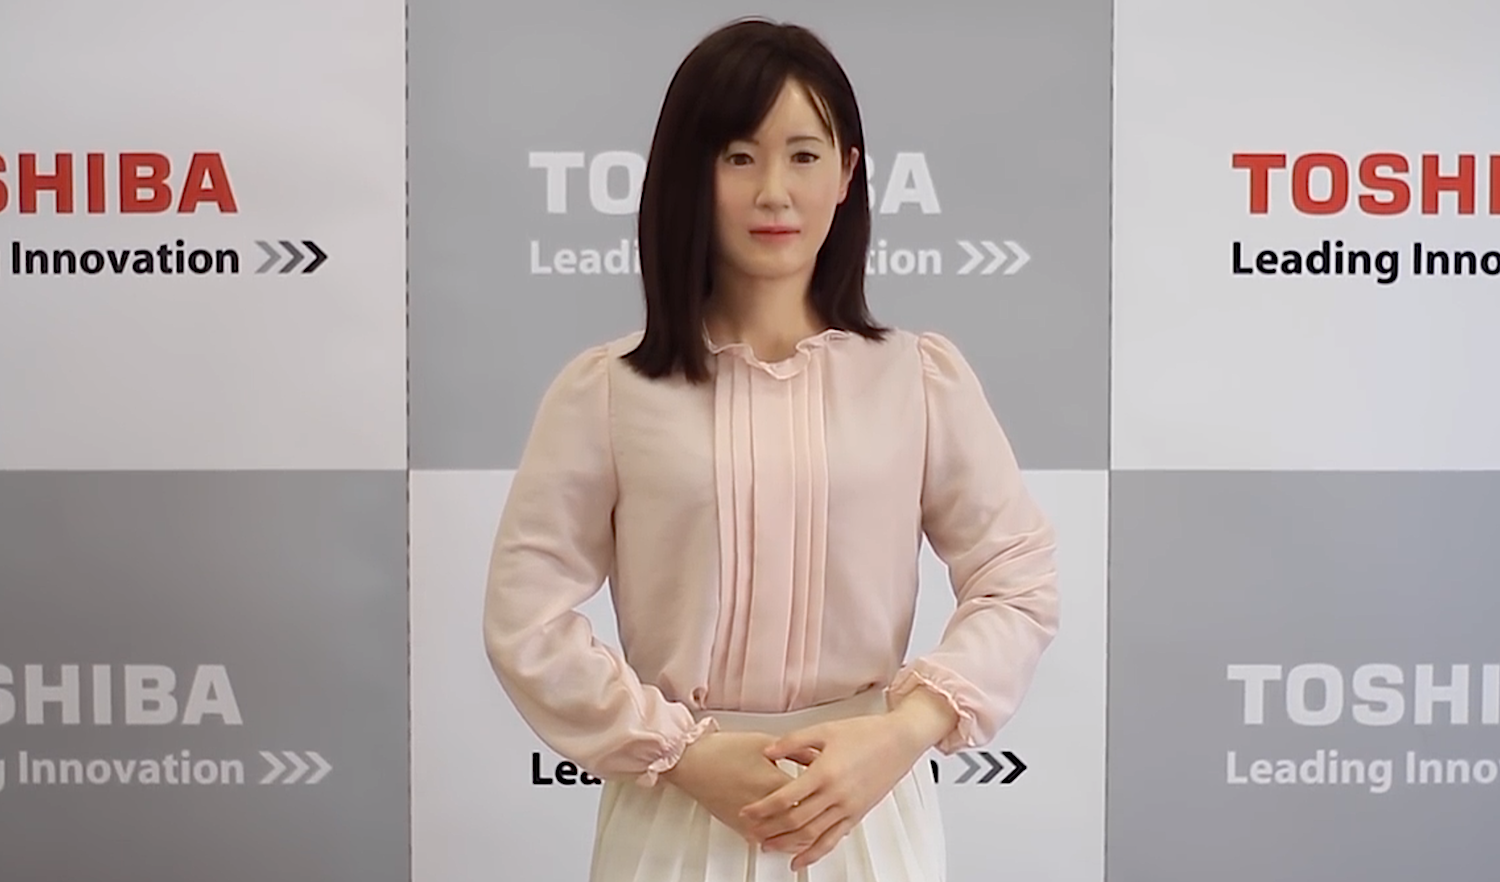 Die Roboterdame Aiko Chihara von Toshiba: Bislang kann der Prototyp lediglich einen Begrüßungstext aufsagen. 2020 soll er bestenfalls mit Gästen der Olympischen Spiele interagieren und Fragen beantworten können.